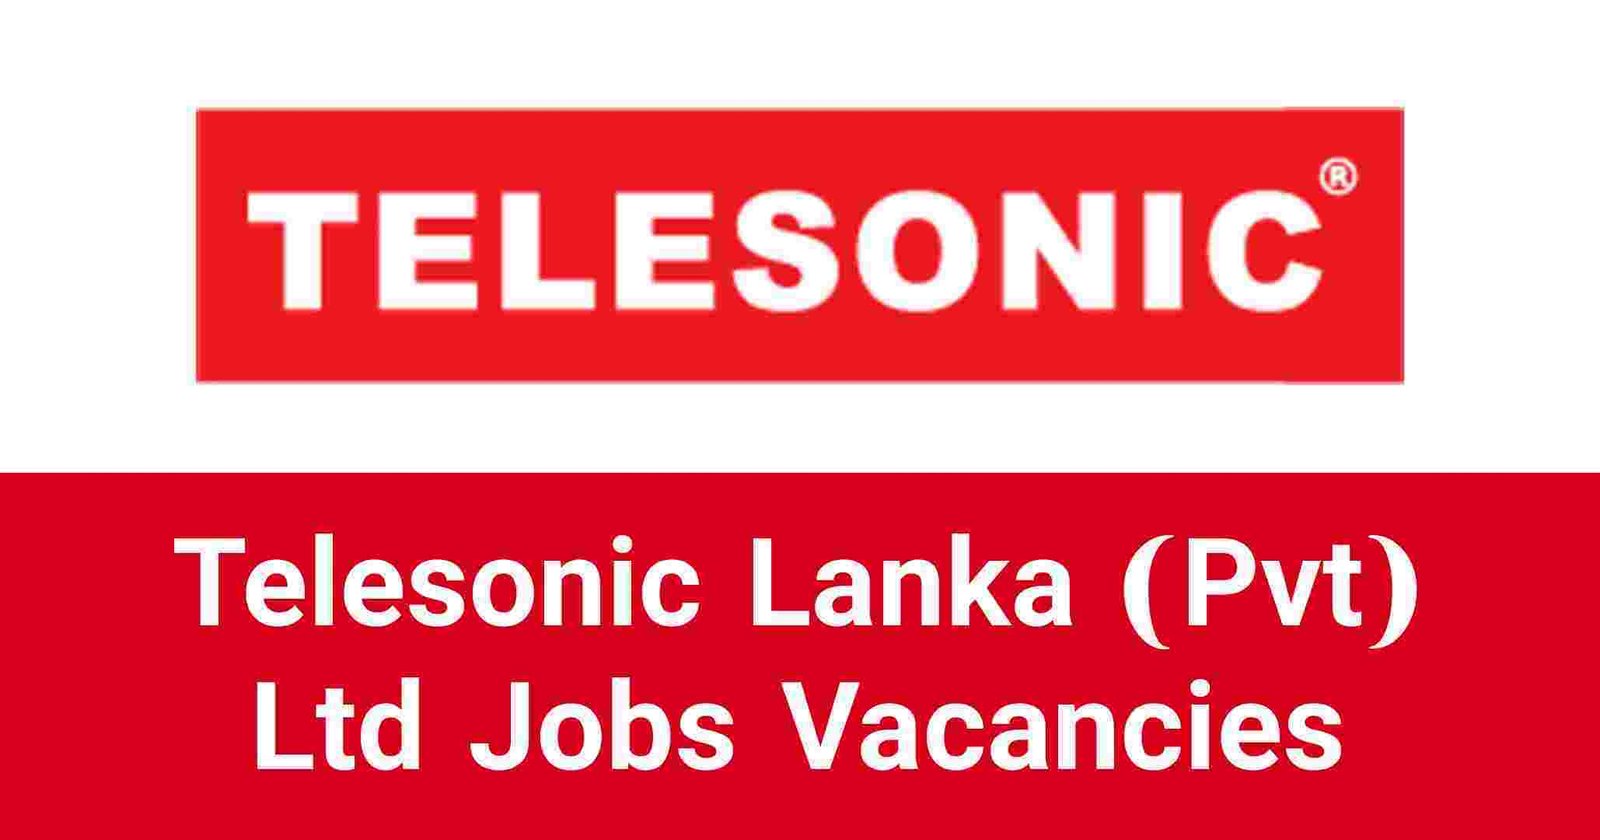 Telesonic Lanka (Pvt) Ltd Jobs Vacancies